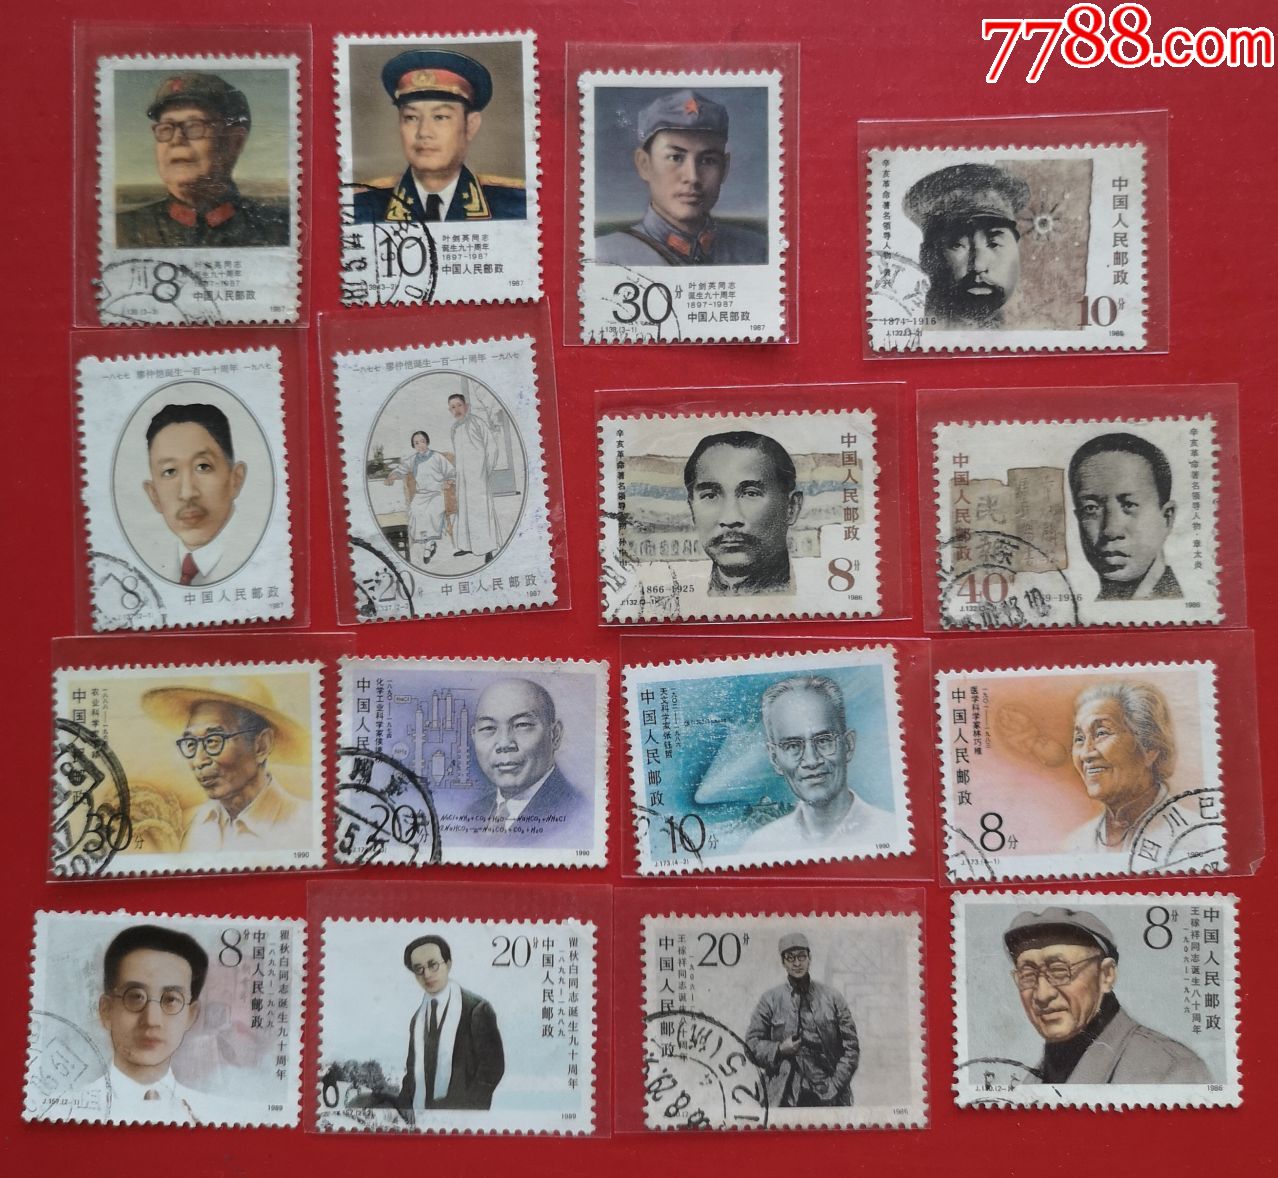 人物的邮票(中国杰出历史人物邮票)